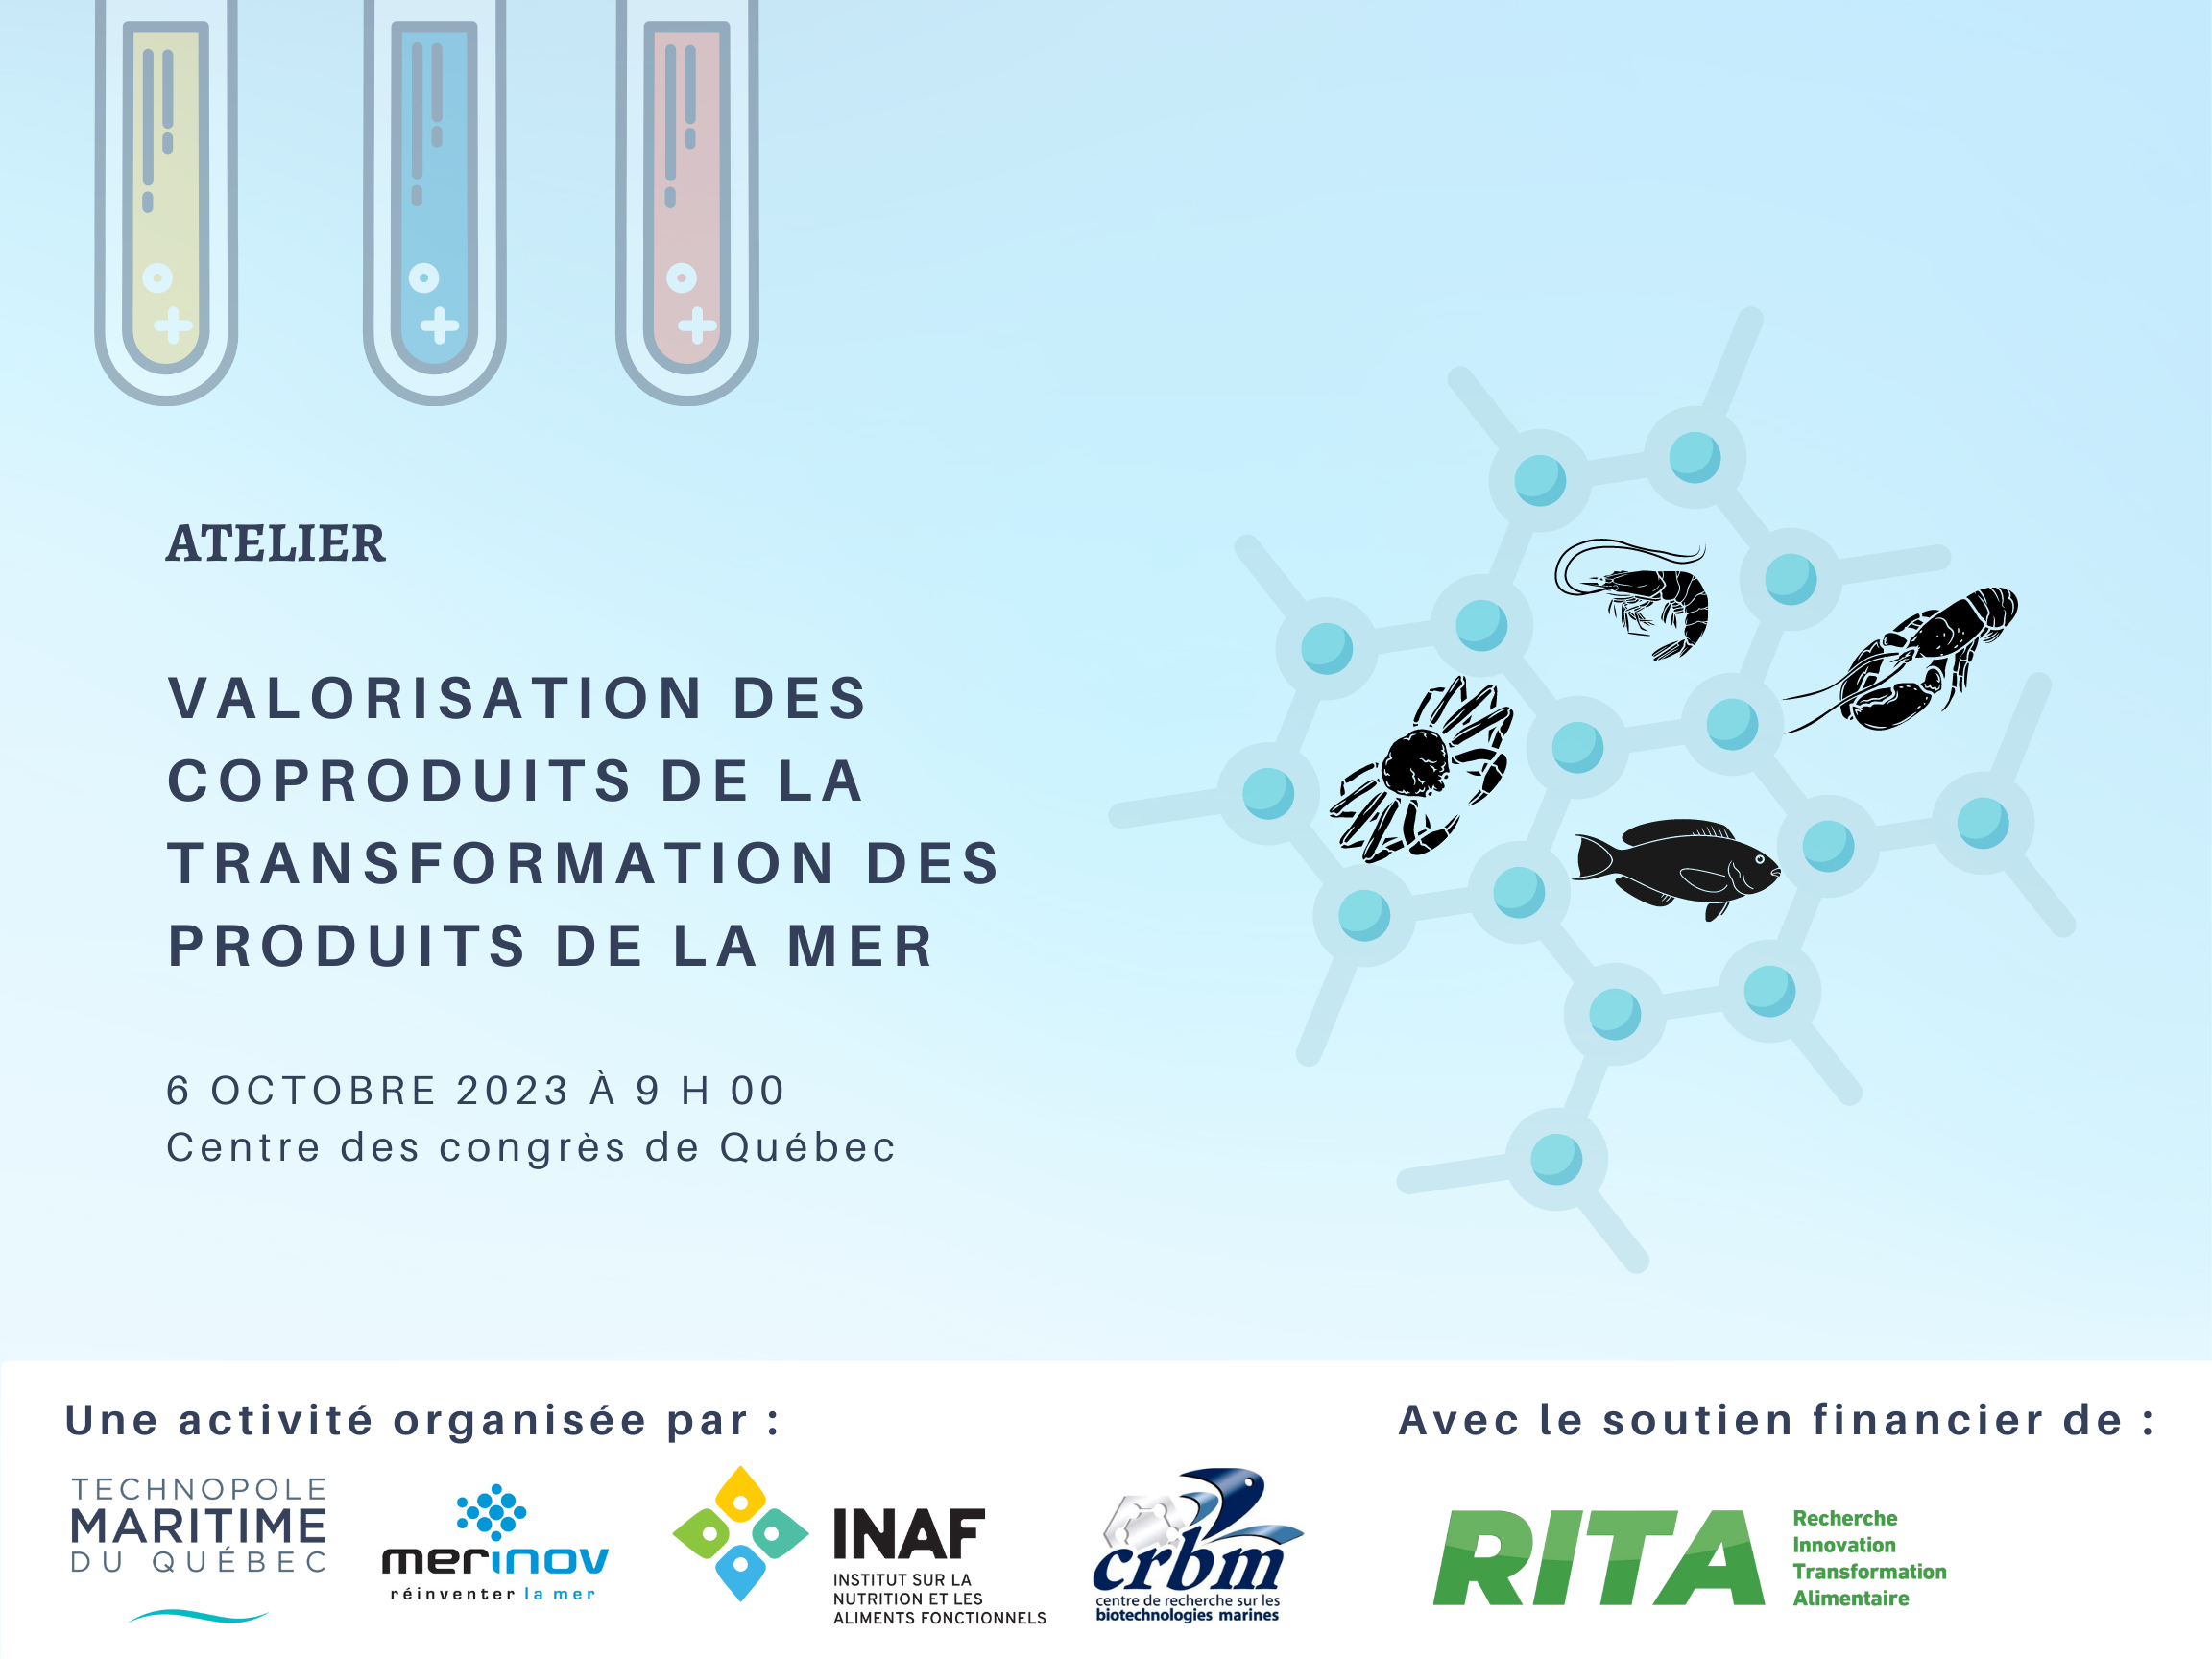 Inscription | Atelier valorisation des coproduits de la transformation des produits de la mer – 6 octobre 2023 – Québec